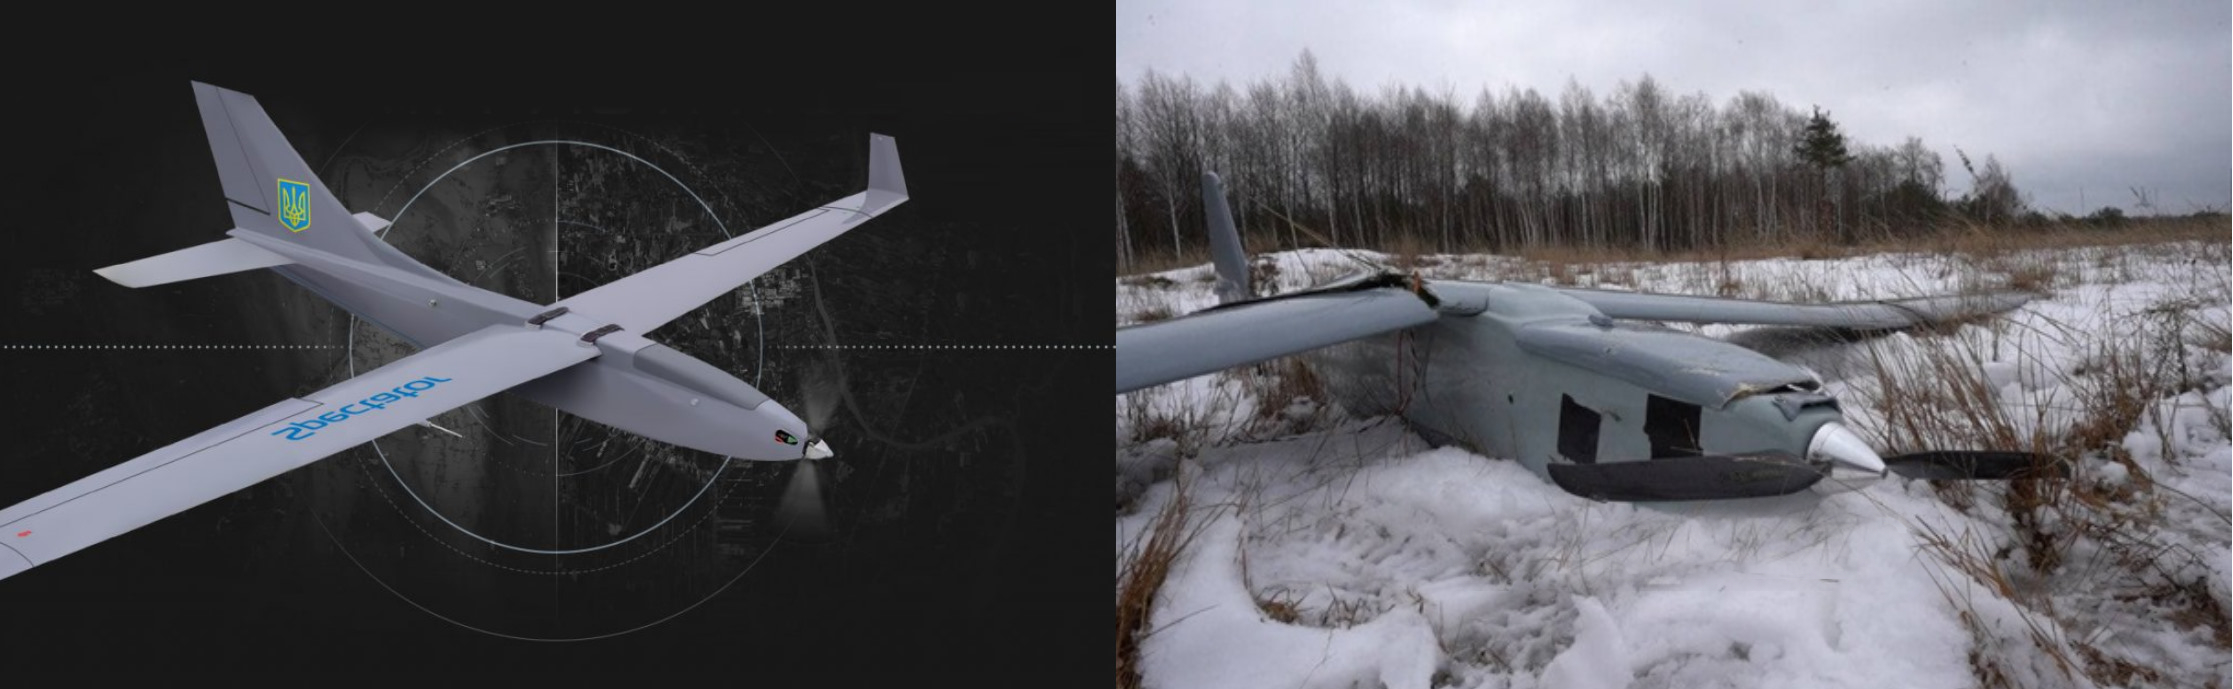 Comparaison avec le drone ukrainien Spectator M1